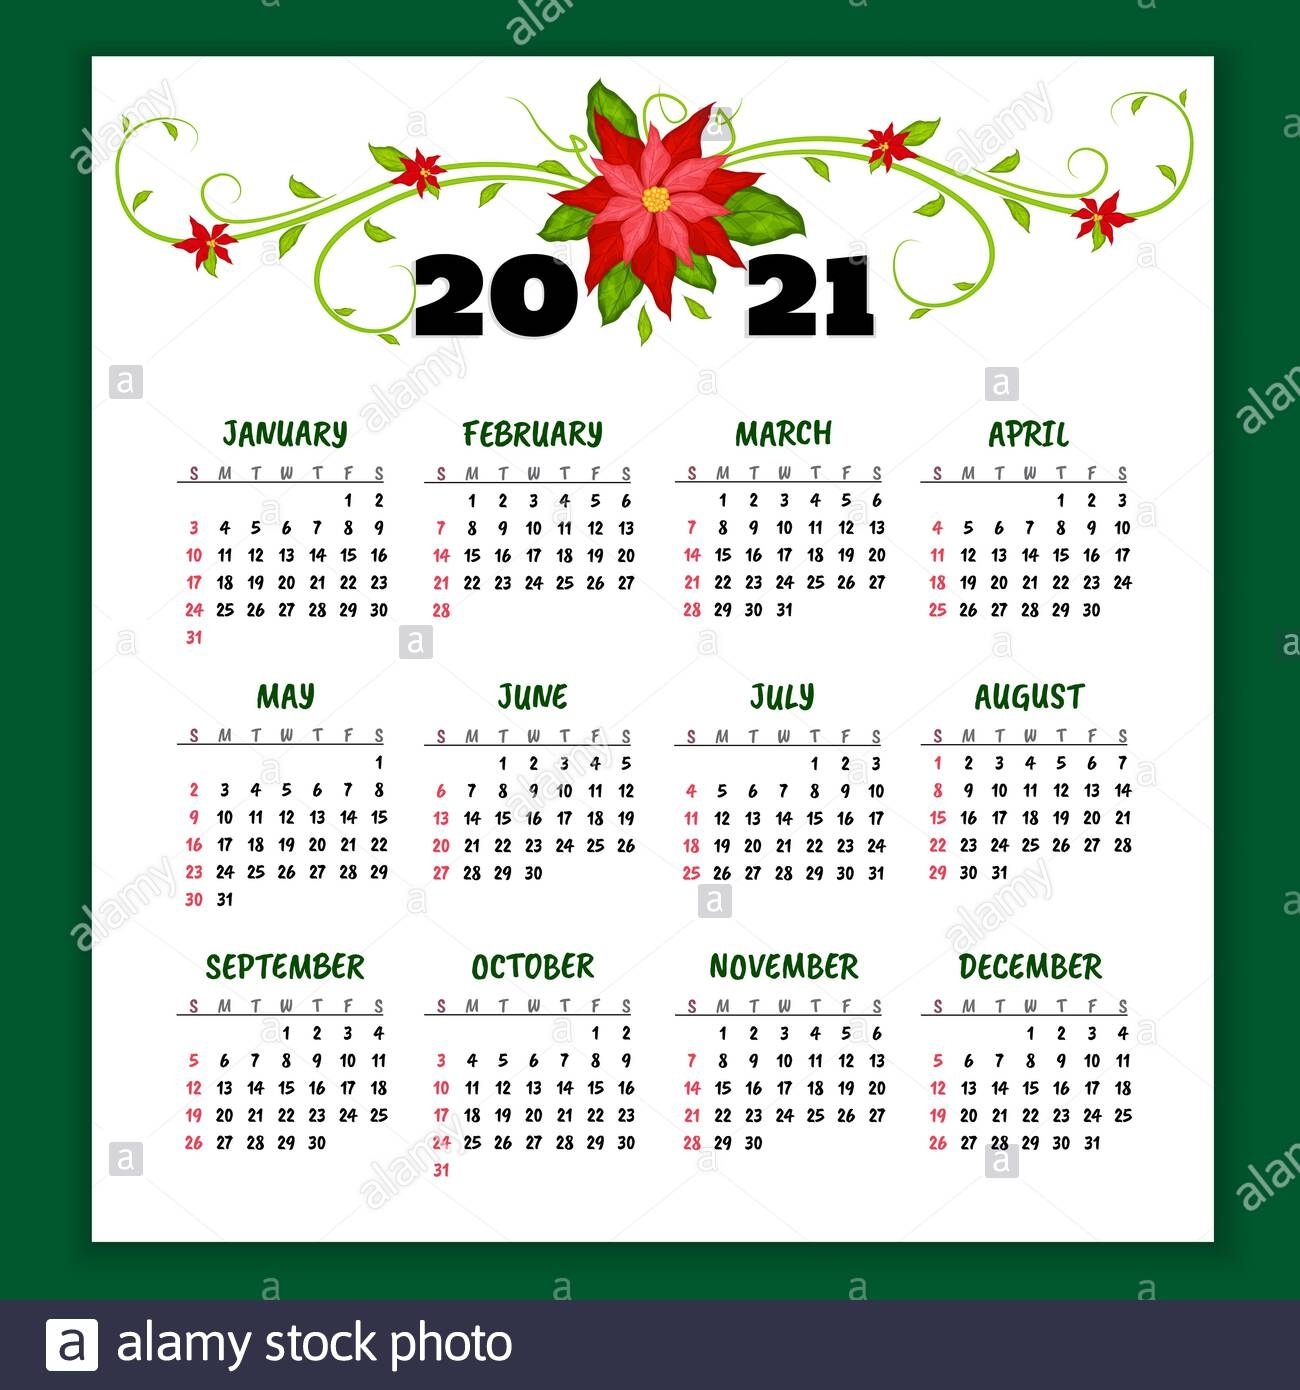 Get Calendar 2021 Hd